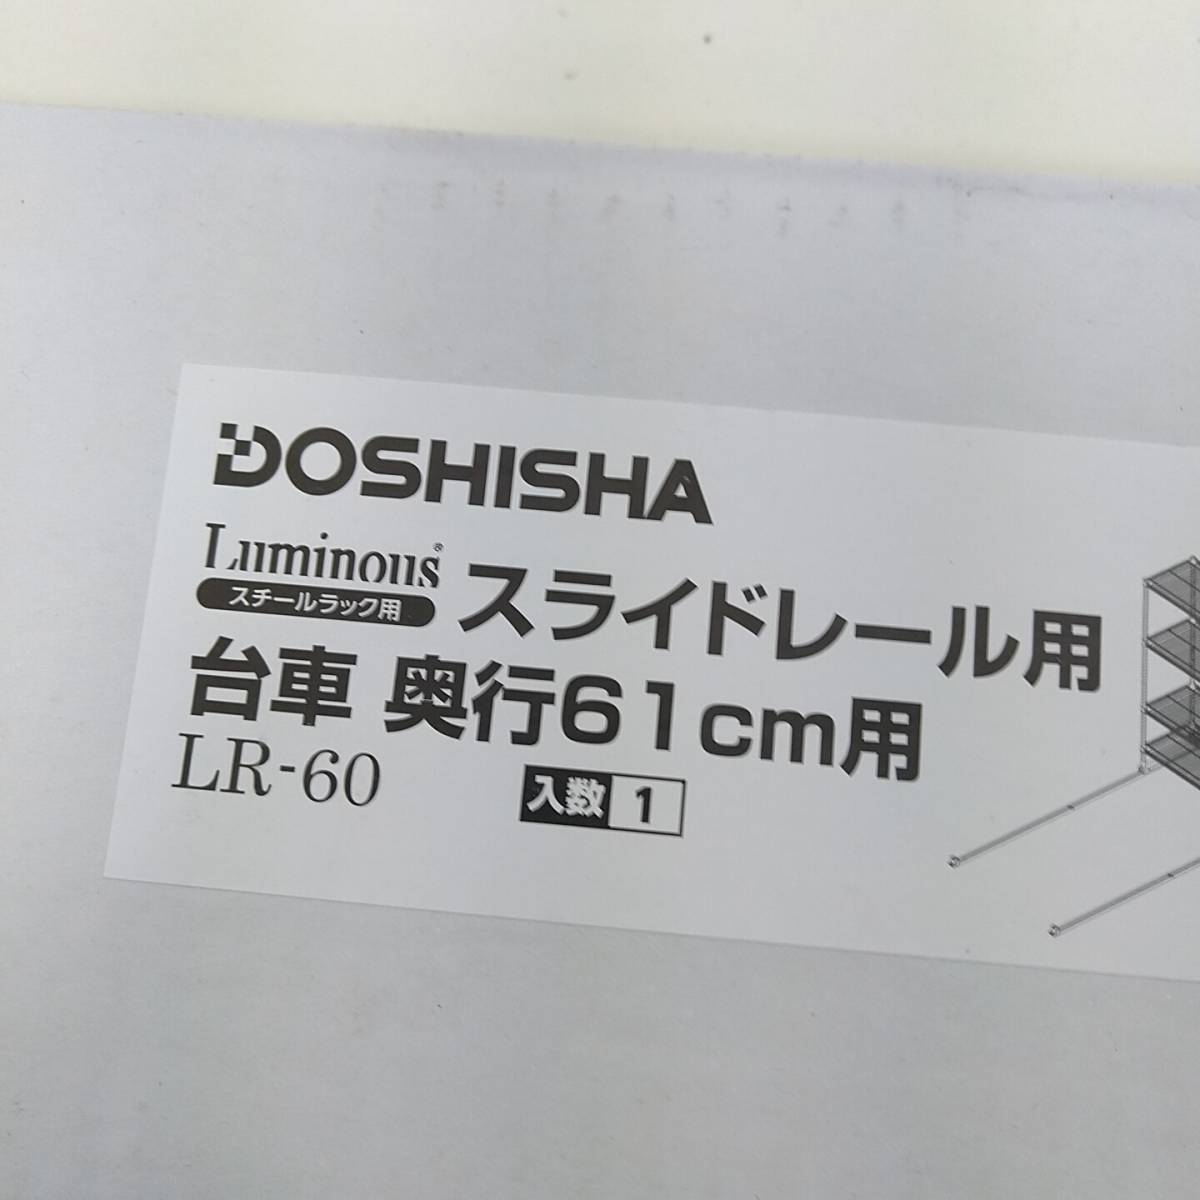 [ не использовался ] DOSHISHA скользящий направляющие для тележка глубина 61cm для LR-60(ruminas стальная стойка для )do корова автомобиль F60